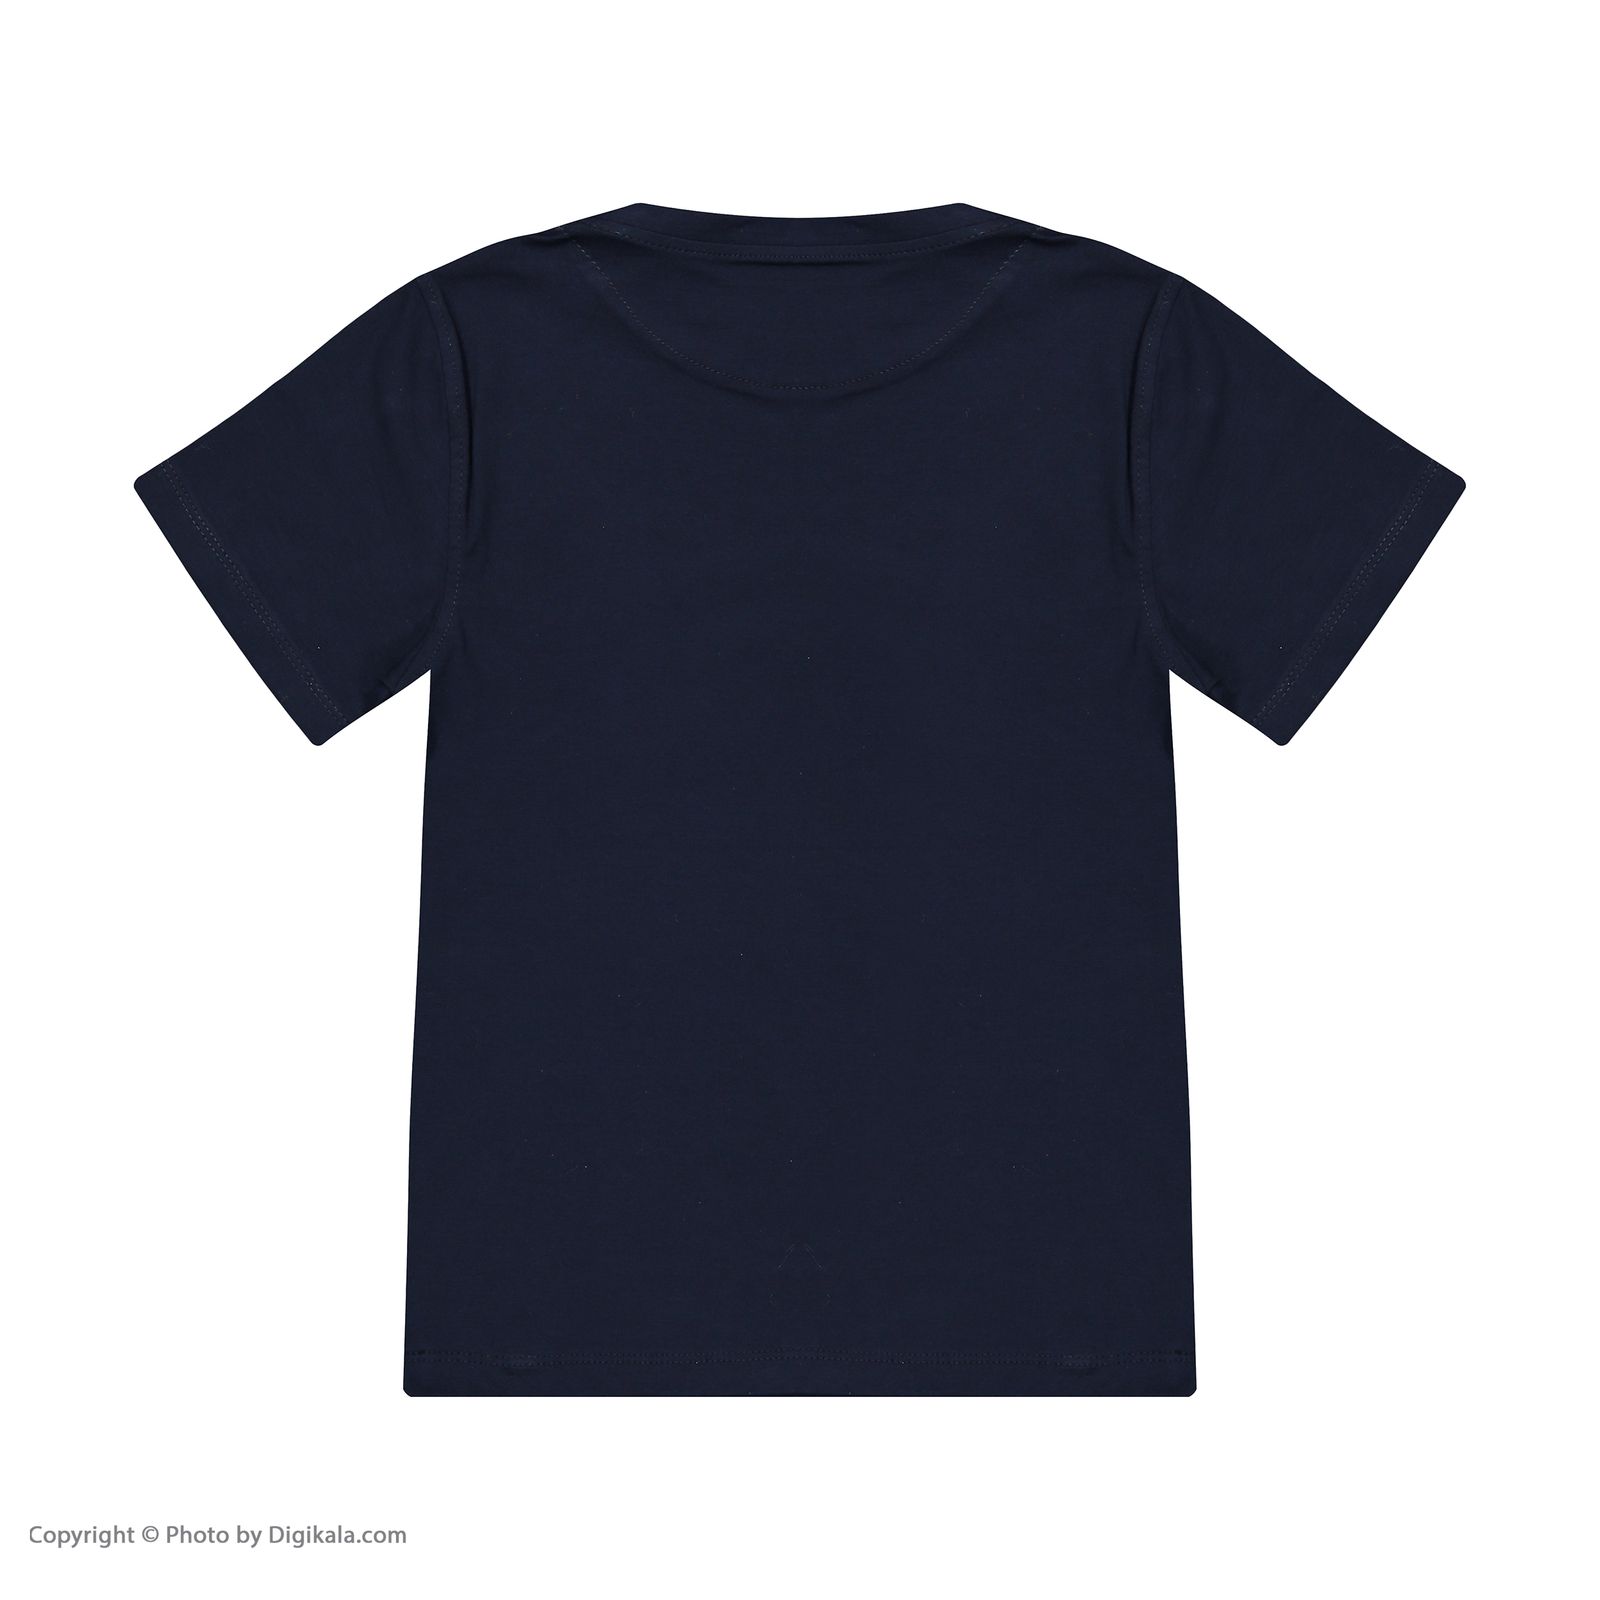 ست تی شرت و شلوارک پسرانه تودوک مدل 2151326-59 -  - 8